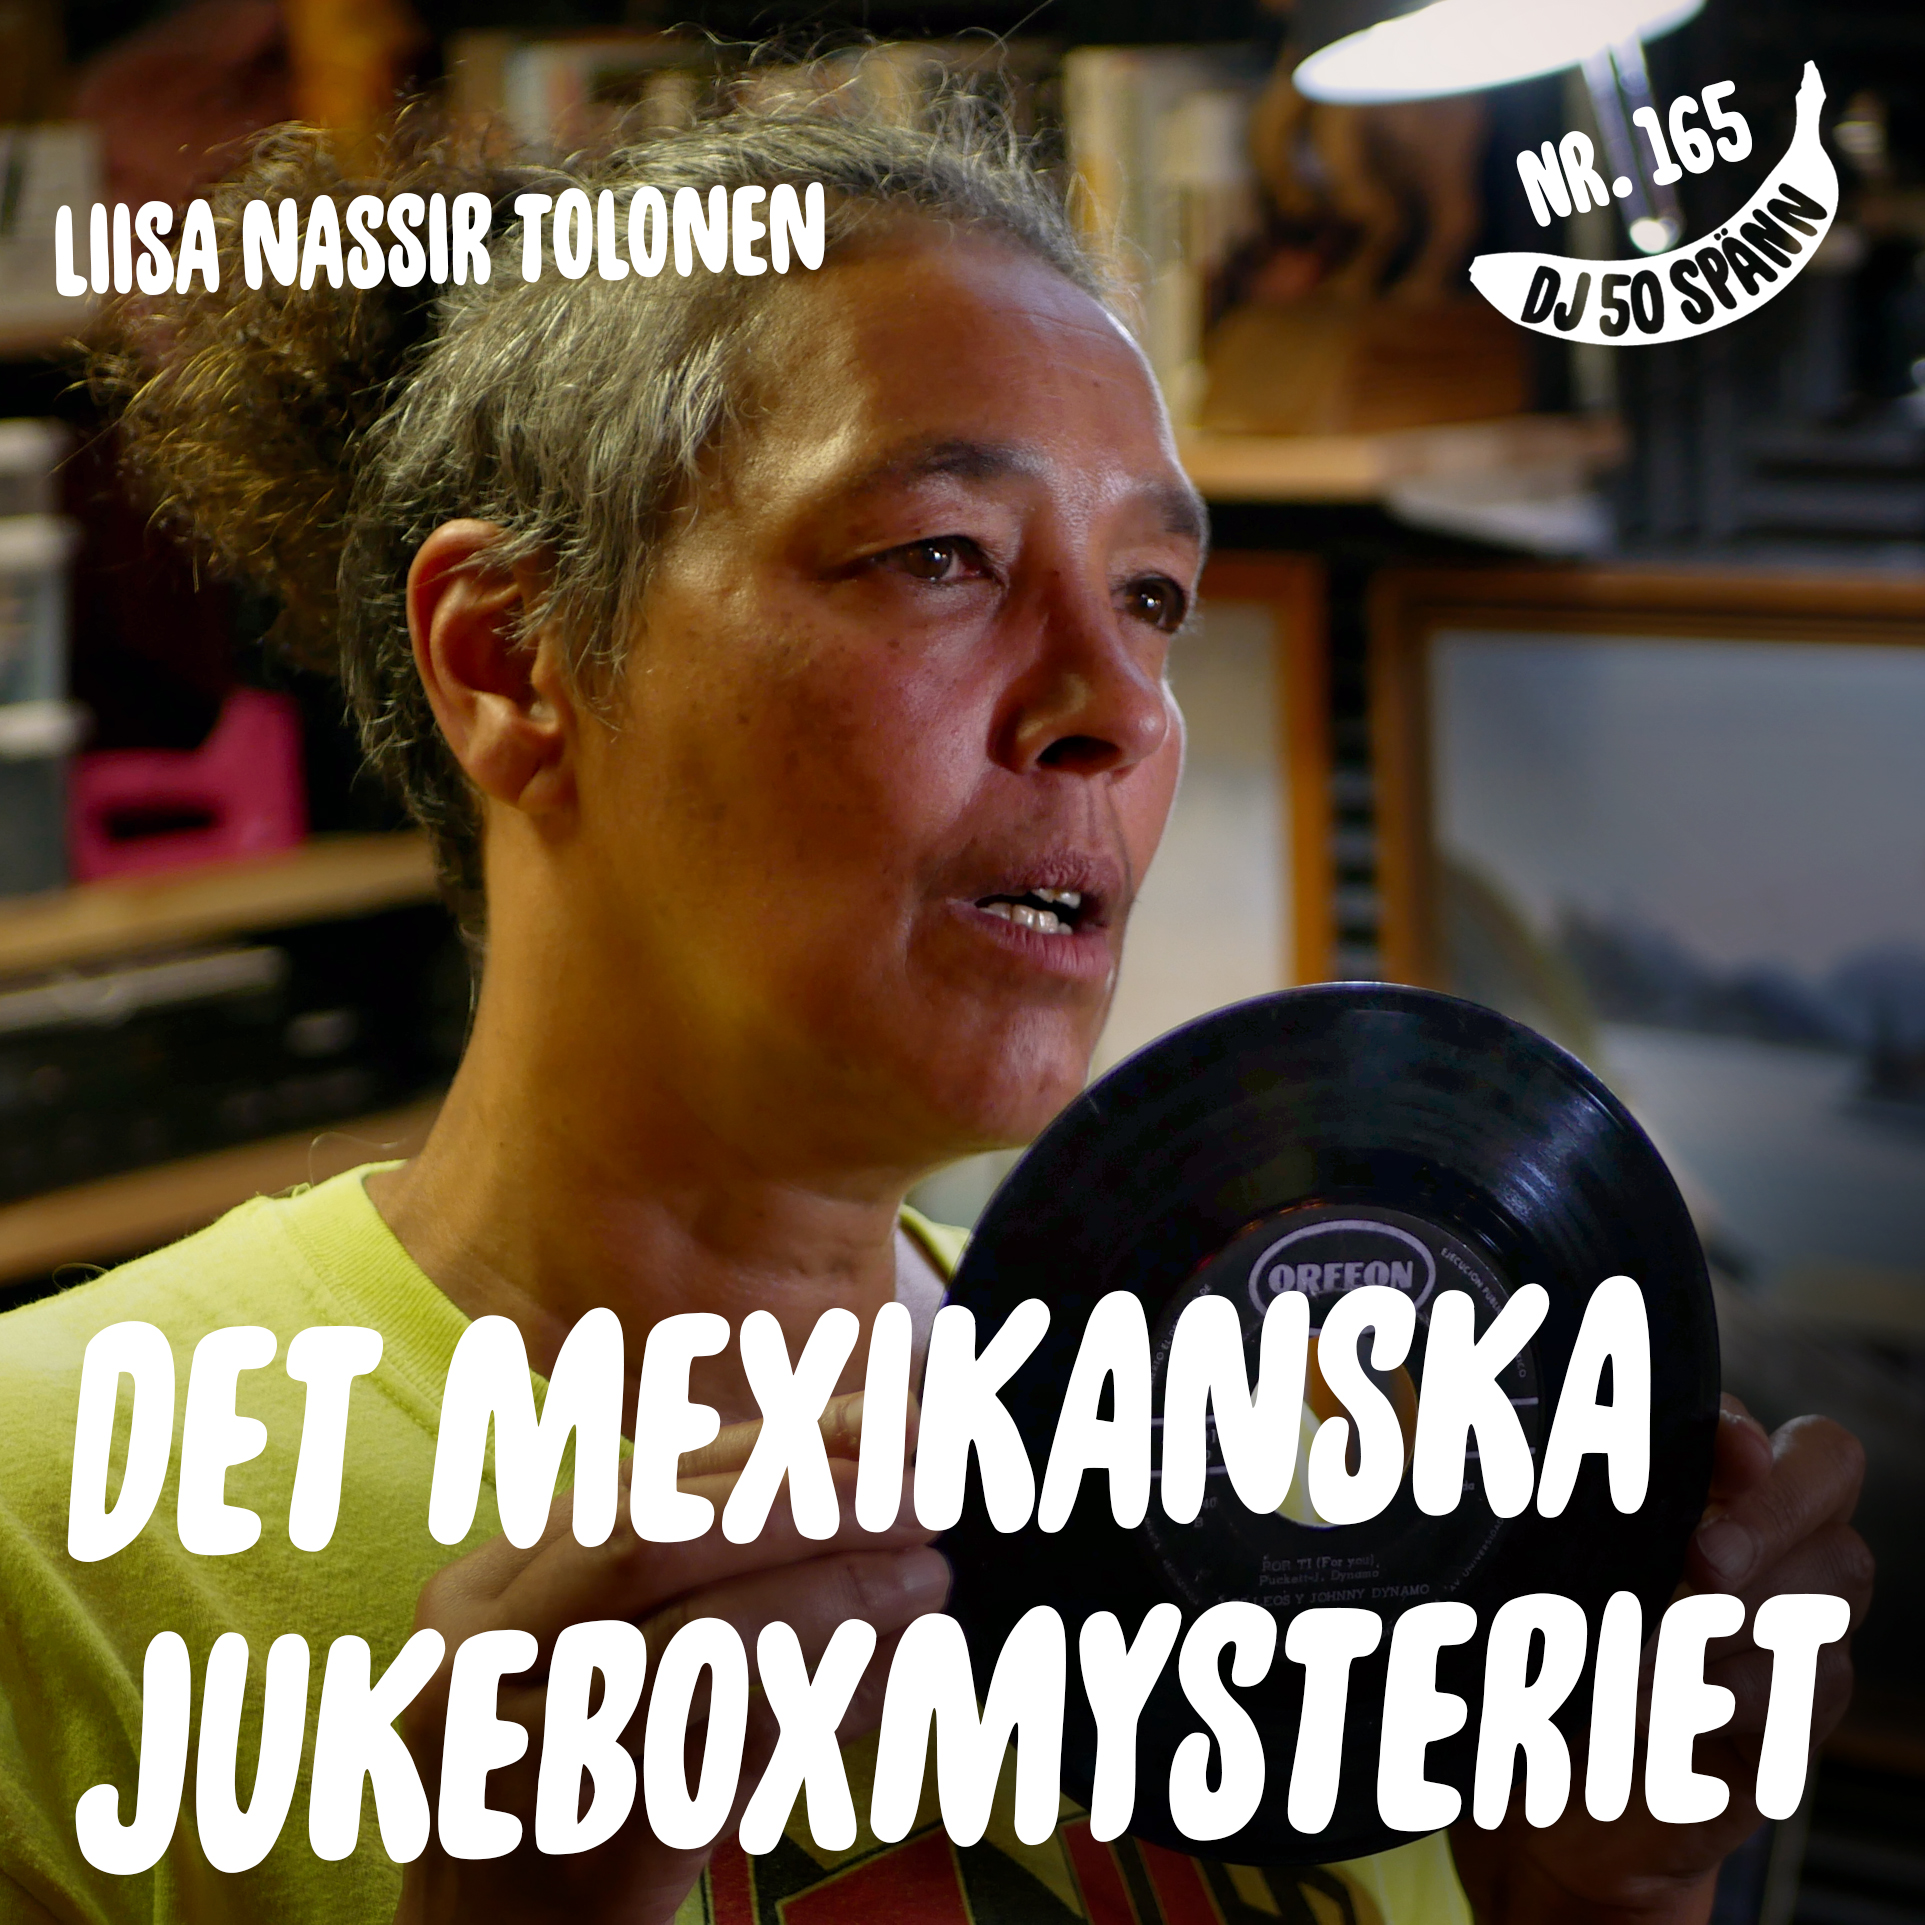 Det mexikanska jukeboxmysteriet med Liisa Nassir Tolonen